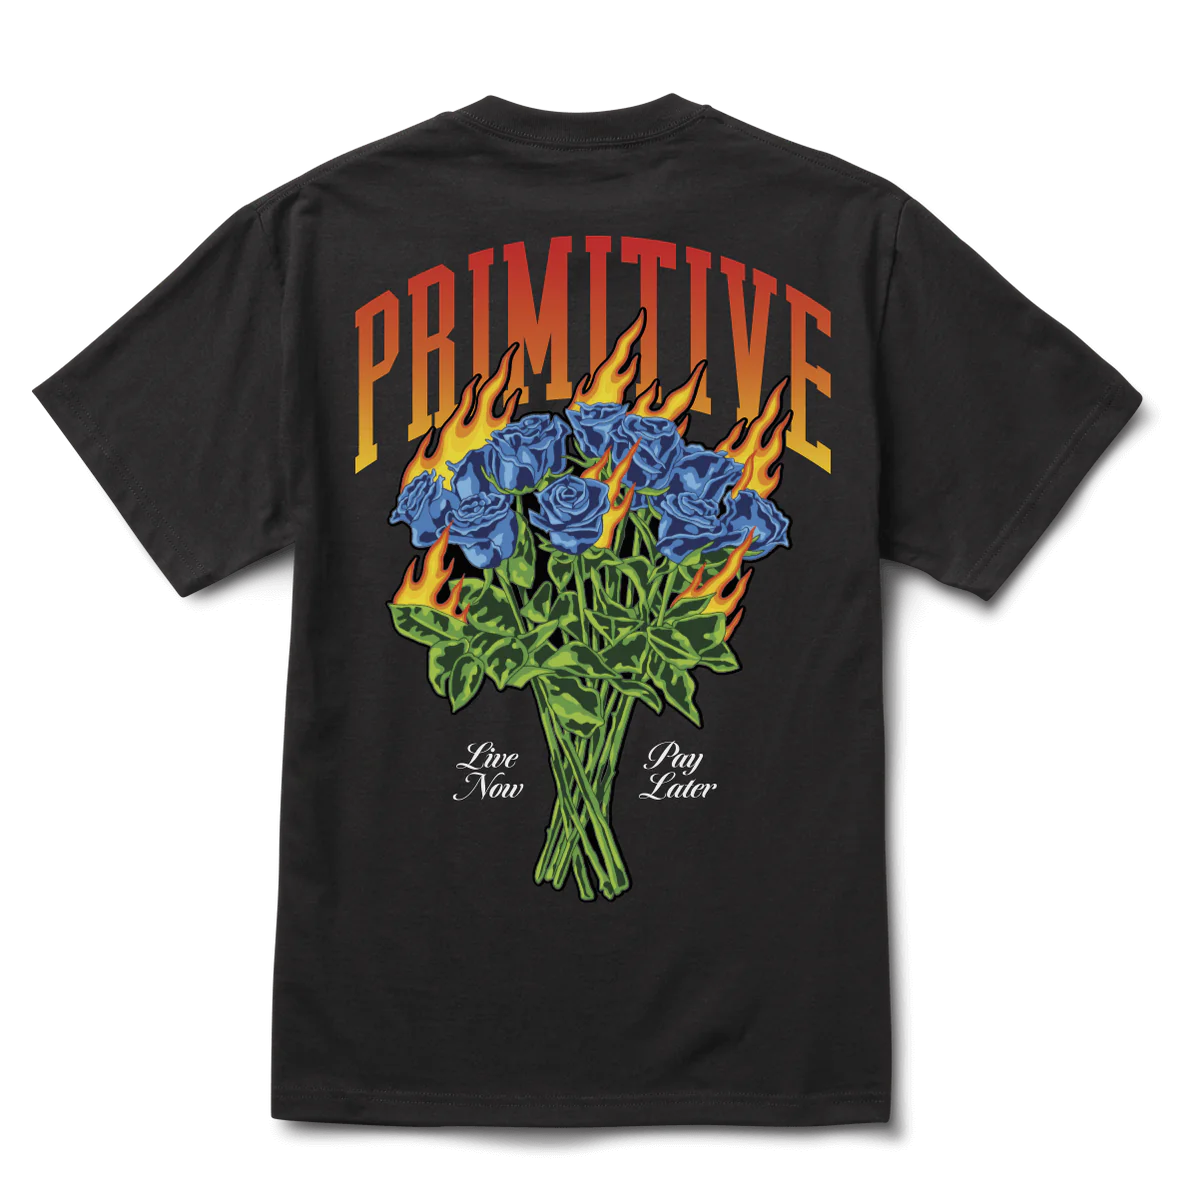 Primitive No Regrets T-Shirt Black